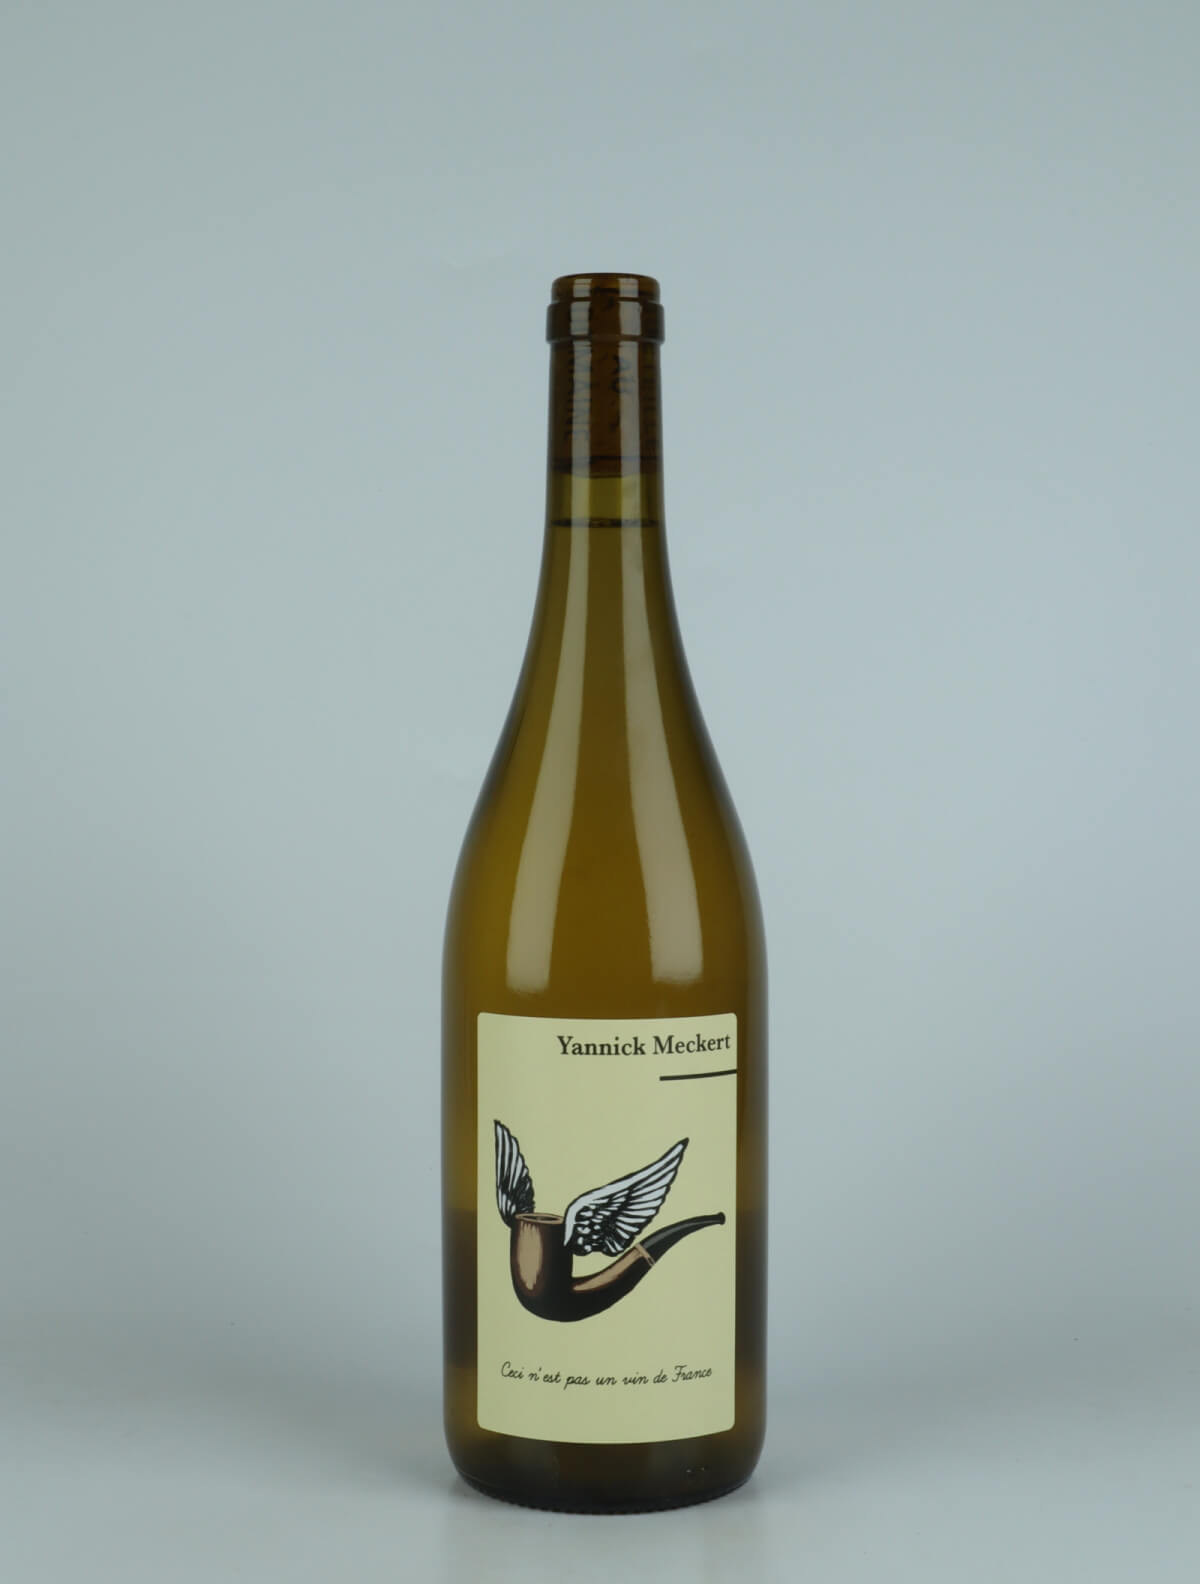 A bottle 2022 Ceci N'est Pas un Vin de France White wine from Yannick Meckert, Alsace in France